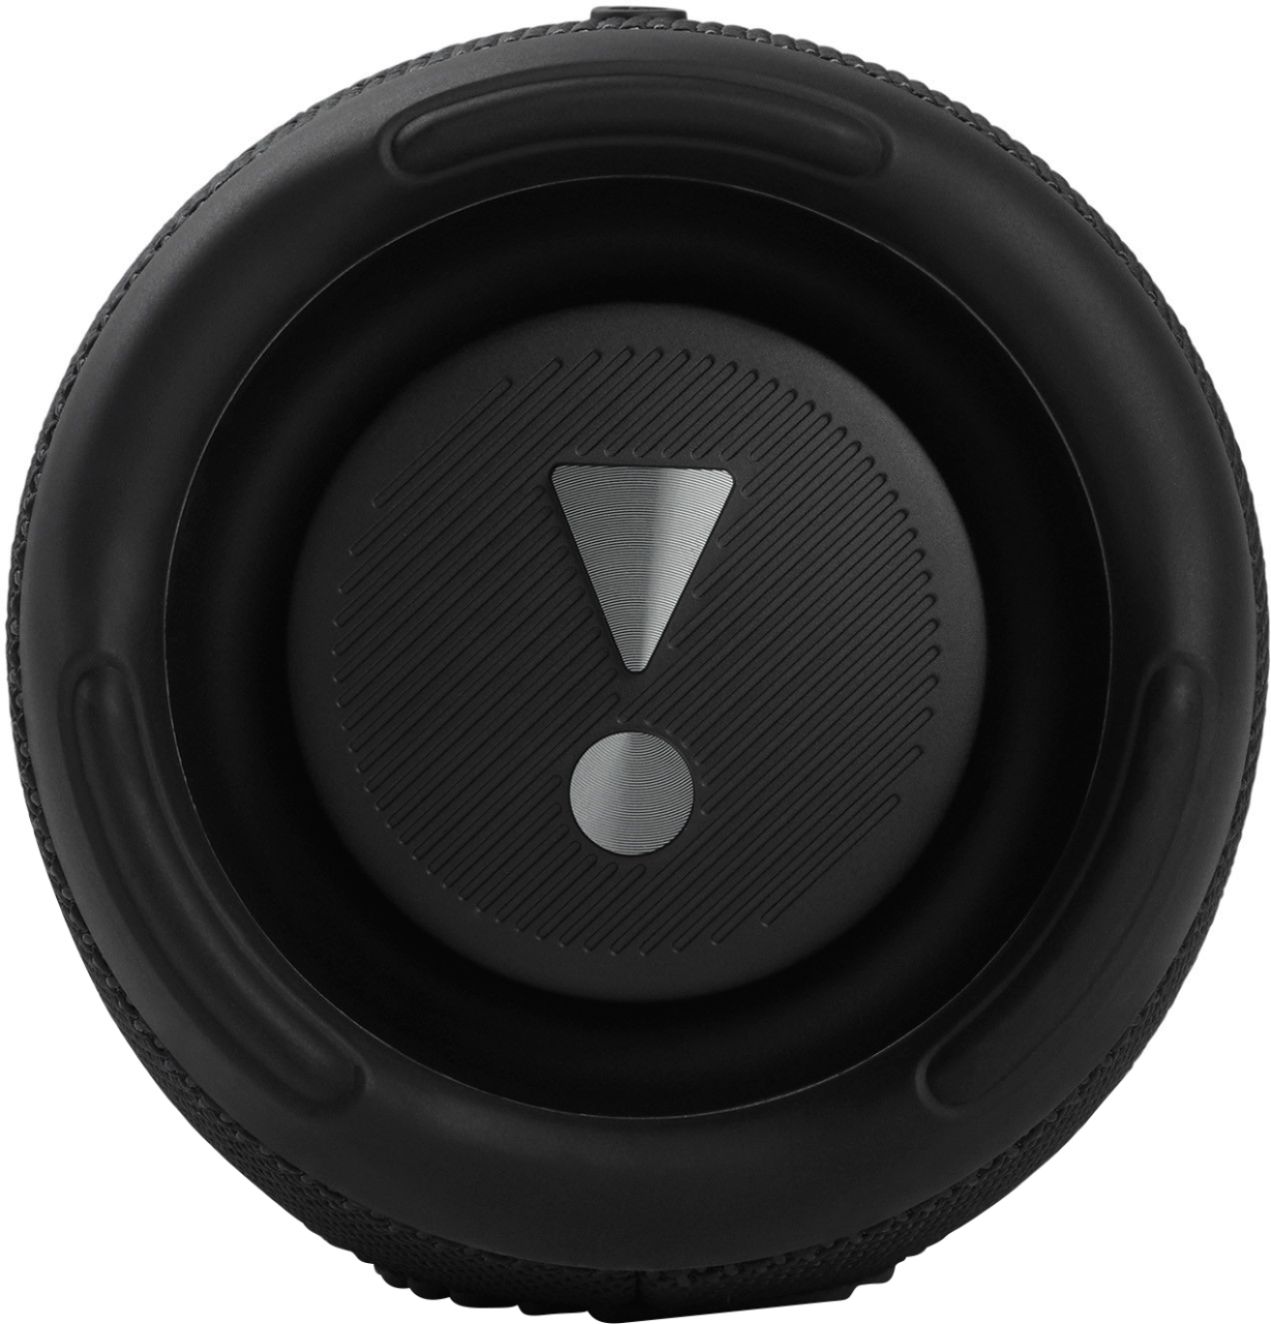 JBL CHARGE5 Portable Waterproof Speaker with Powerbank Black 